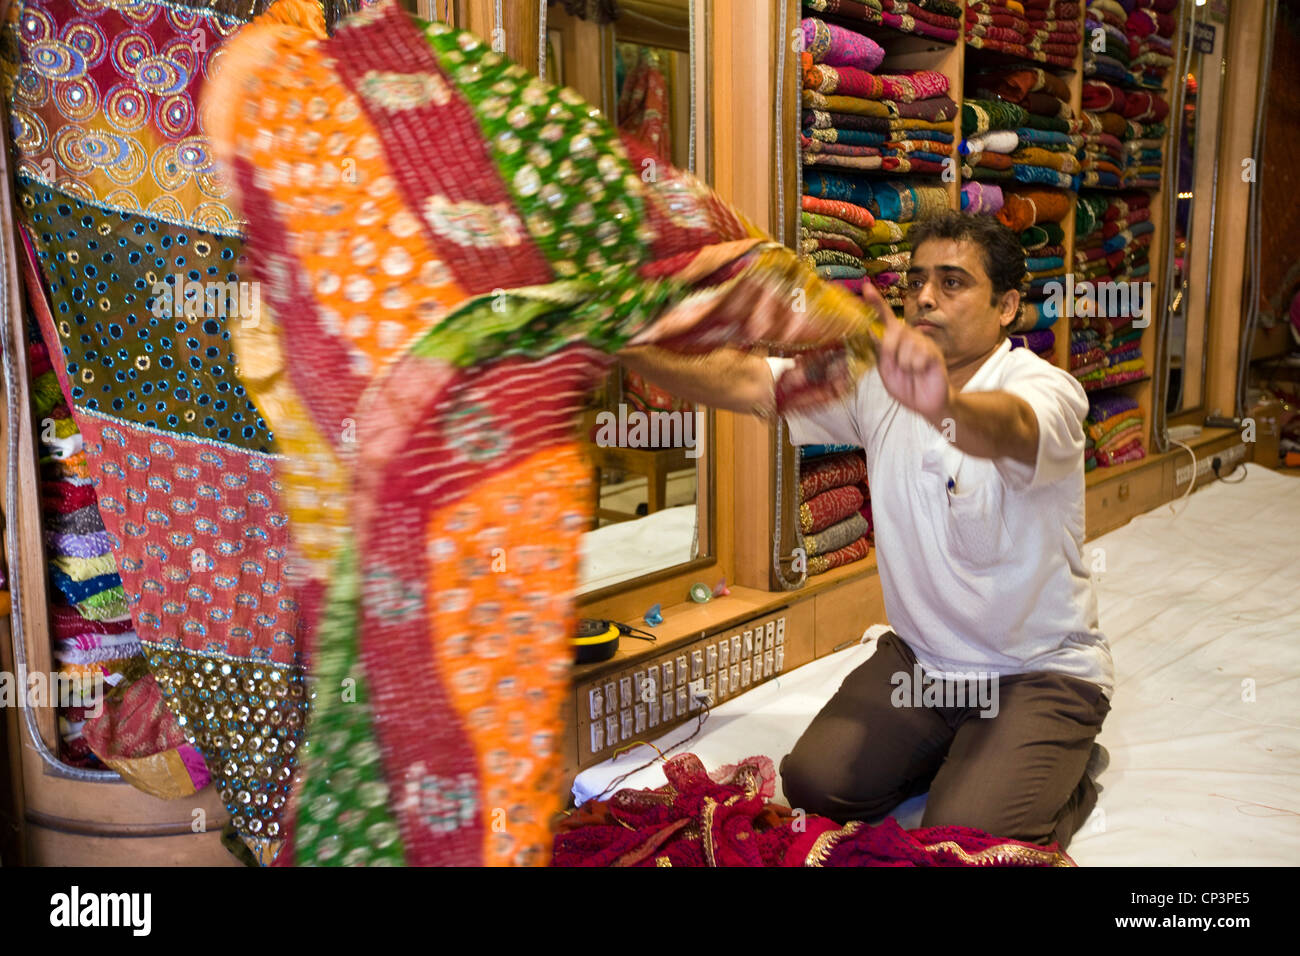 A man selling material in the Johari Bazaar, Jaipur, India Stock Photo